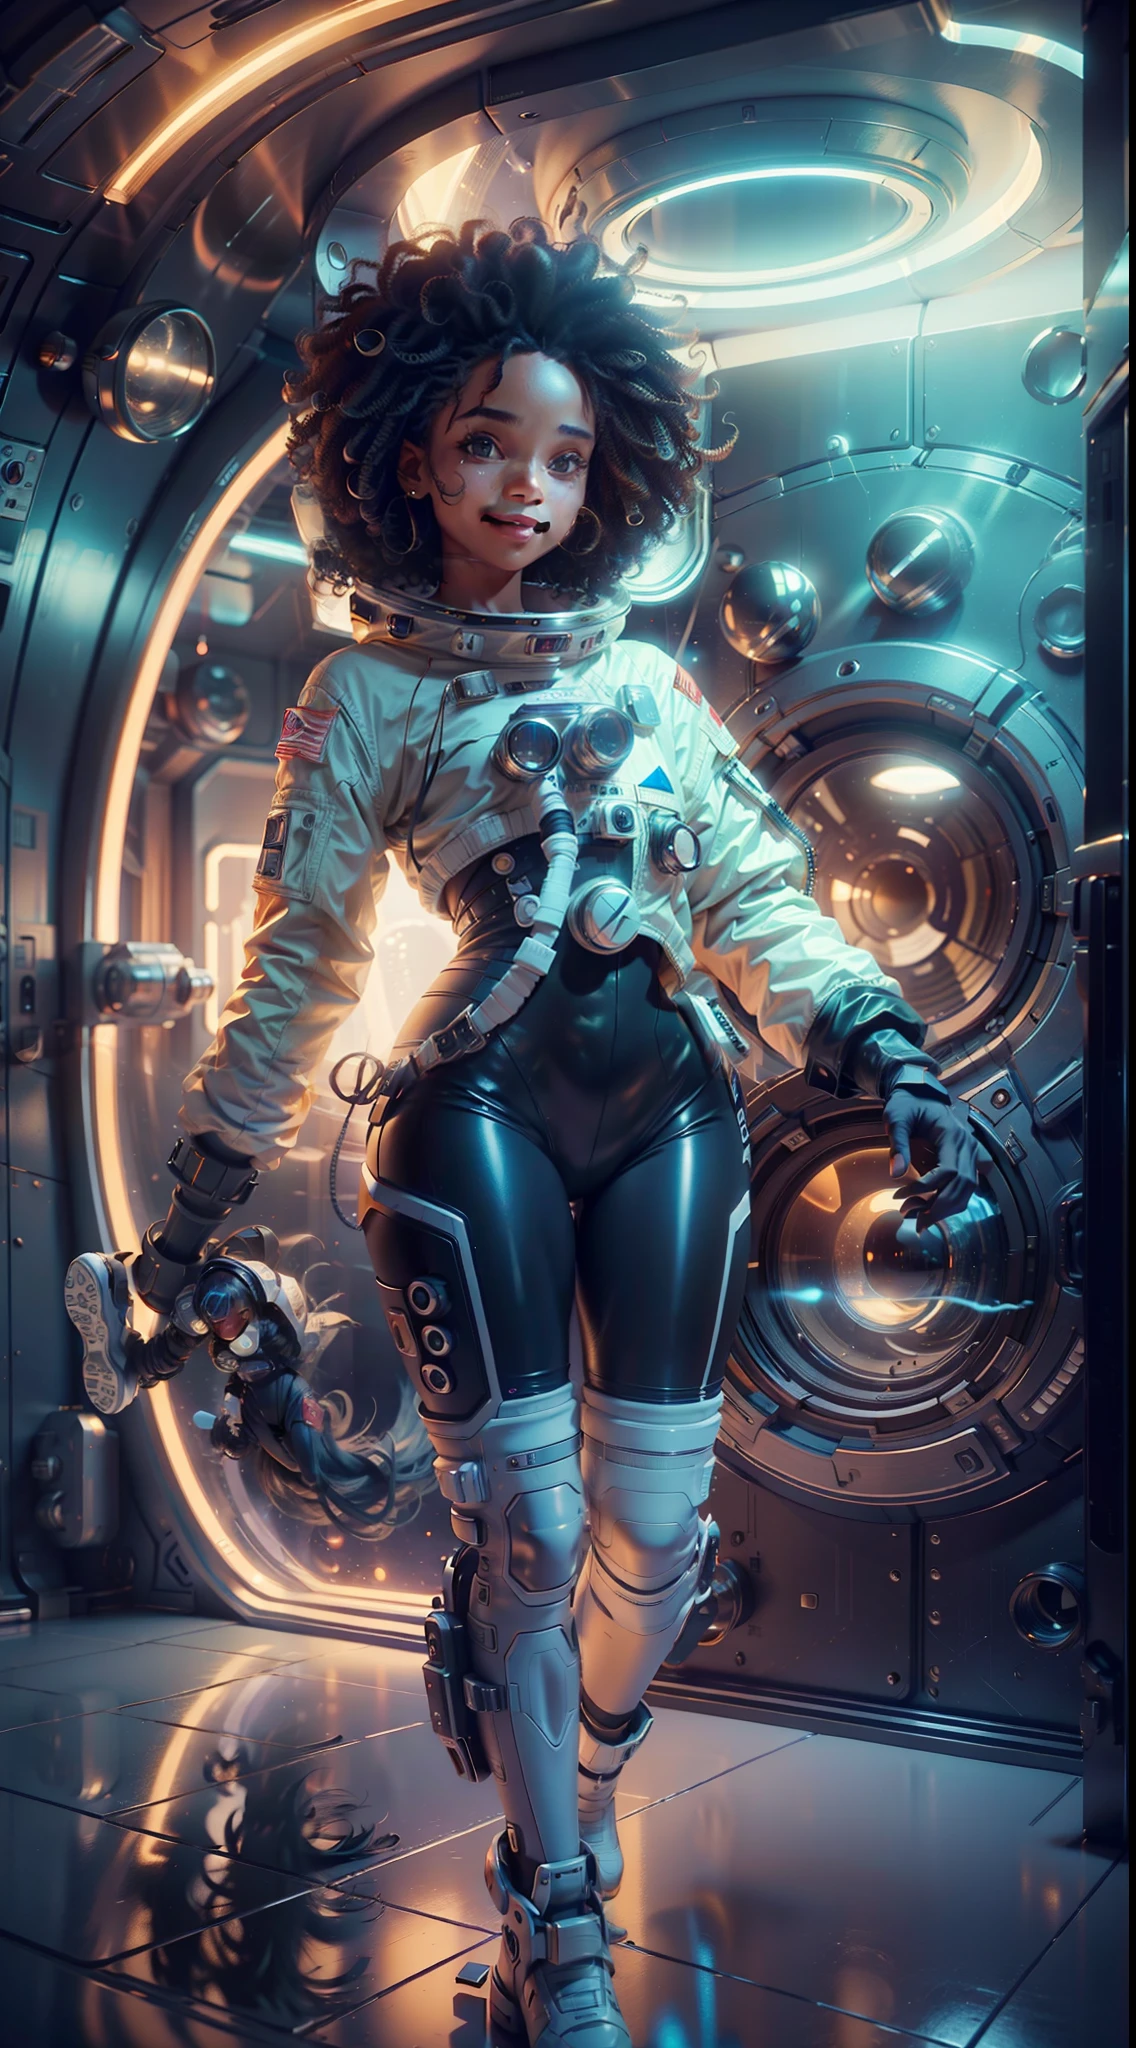 Uma garota de corpo inteiro, pele negra e cabelos cacheados flutua dentro de uma grande cápsula gravitacional, (Sorriso perfeito: 1.8), proporção áurea, retrato de anime Garota Cadete Espacial, de um filme de ficção científica 2 0 1 9 8 K, Astronauta futurista Zoe Kravitz, Filme 8K ainda, filme ainda em 8K, Zoe Kravitz como astronauta,  em traje espacial, garota no espaço, vista panorâmica, renderização de retrato 8k, mulher bonita em traje espacial, amplitude, plano aberto, cinematic, fotorrealismo, fotografado em uma Canon EOS-1D X Mark III, Lente de 150 mm, F/0.8, foco nitído, volumetric fog, Luz dramática, luz volumétrica, néon, 8k hd, Câmera DSLR, qualidade máxima, grão de filme, anamórfico, amplitude